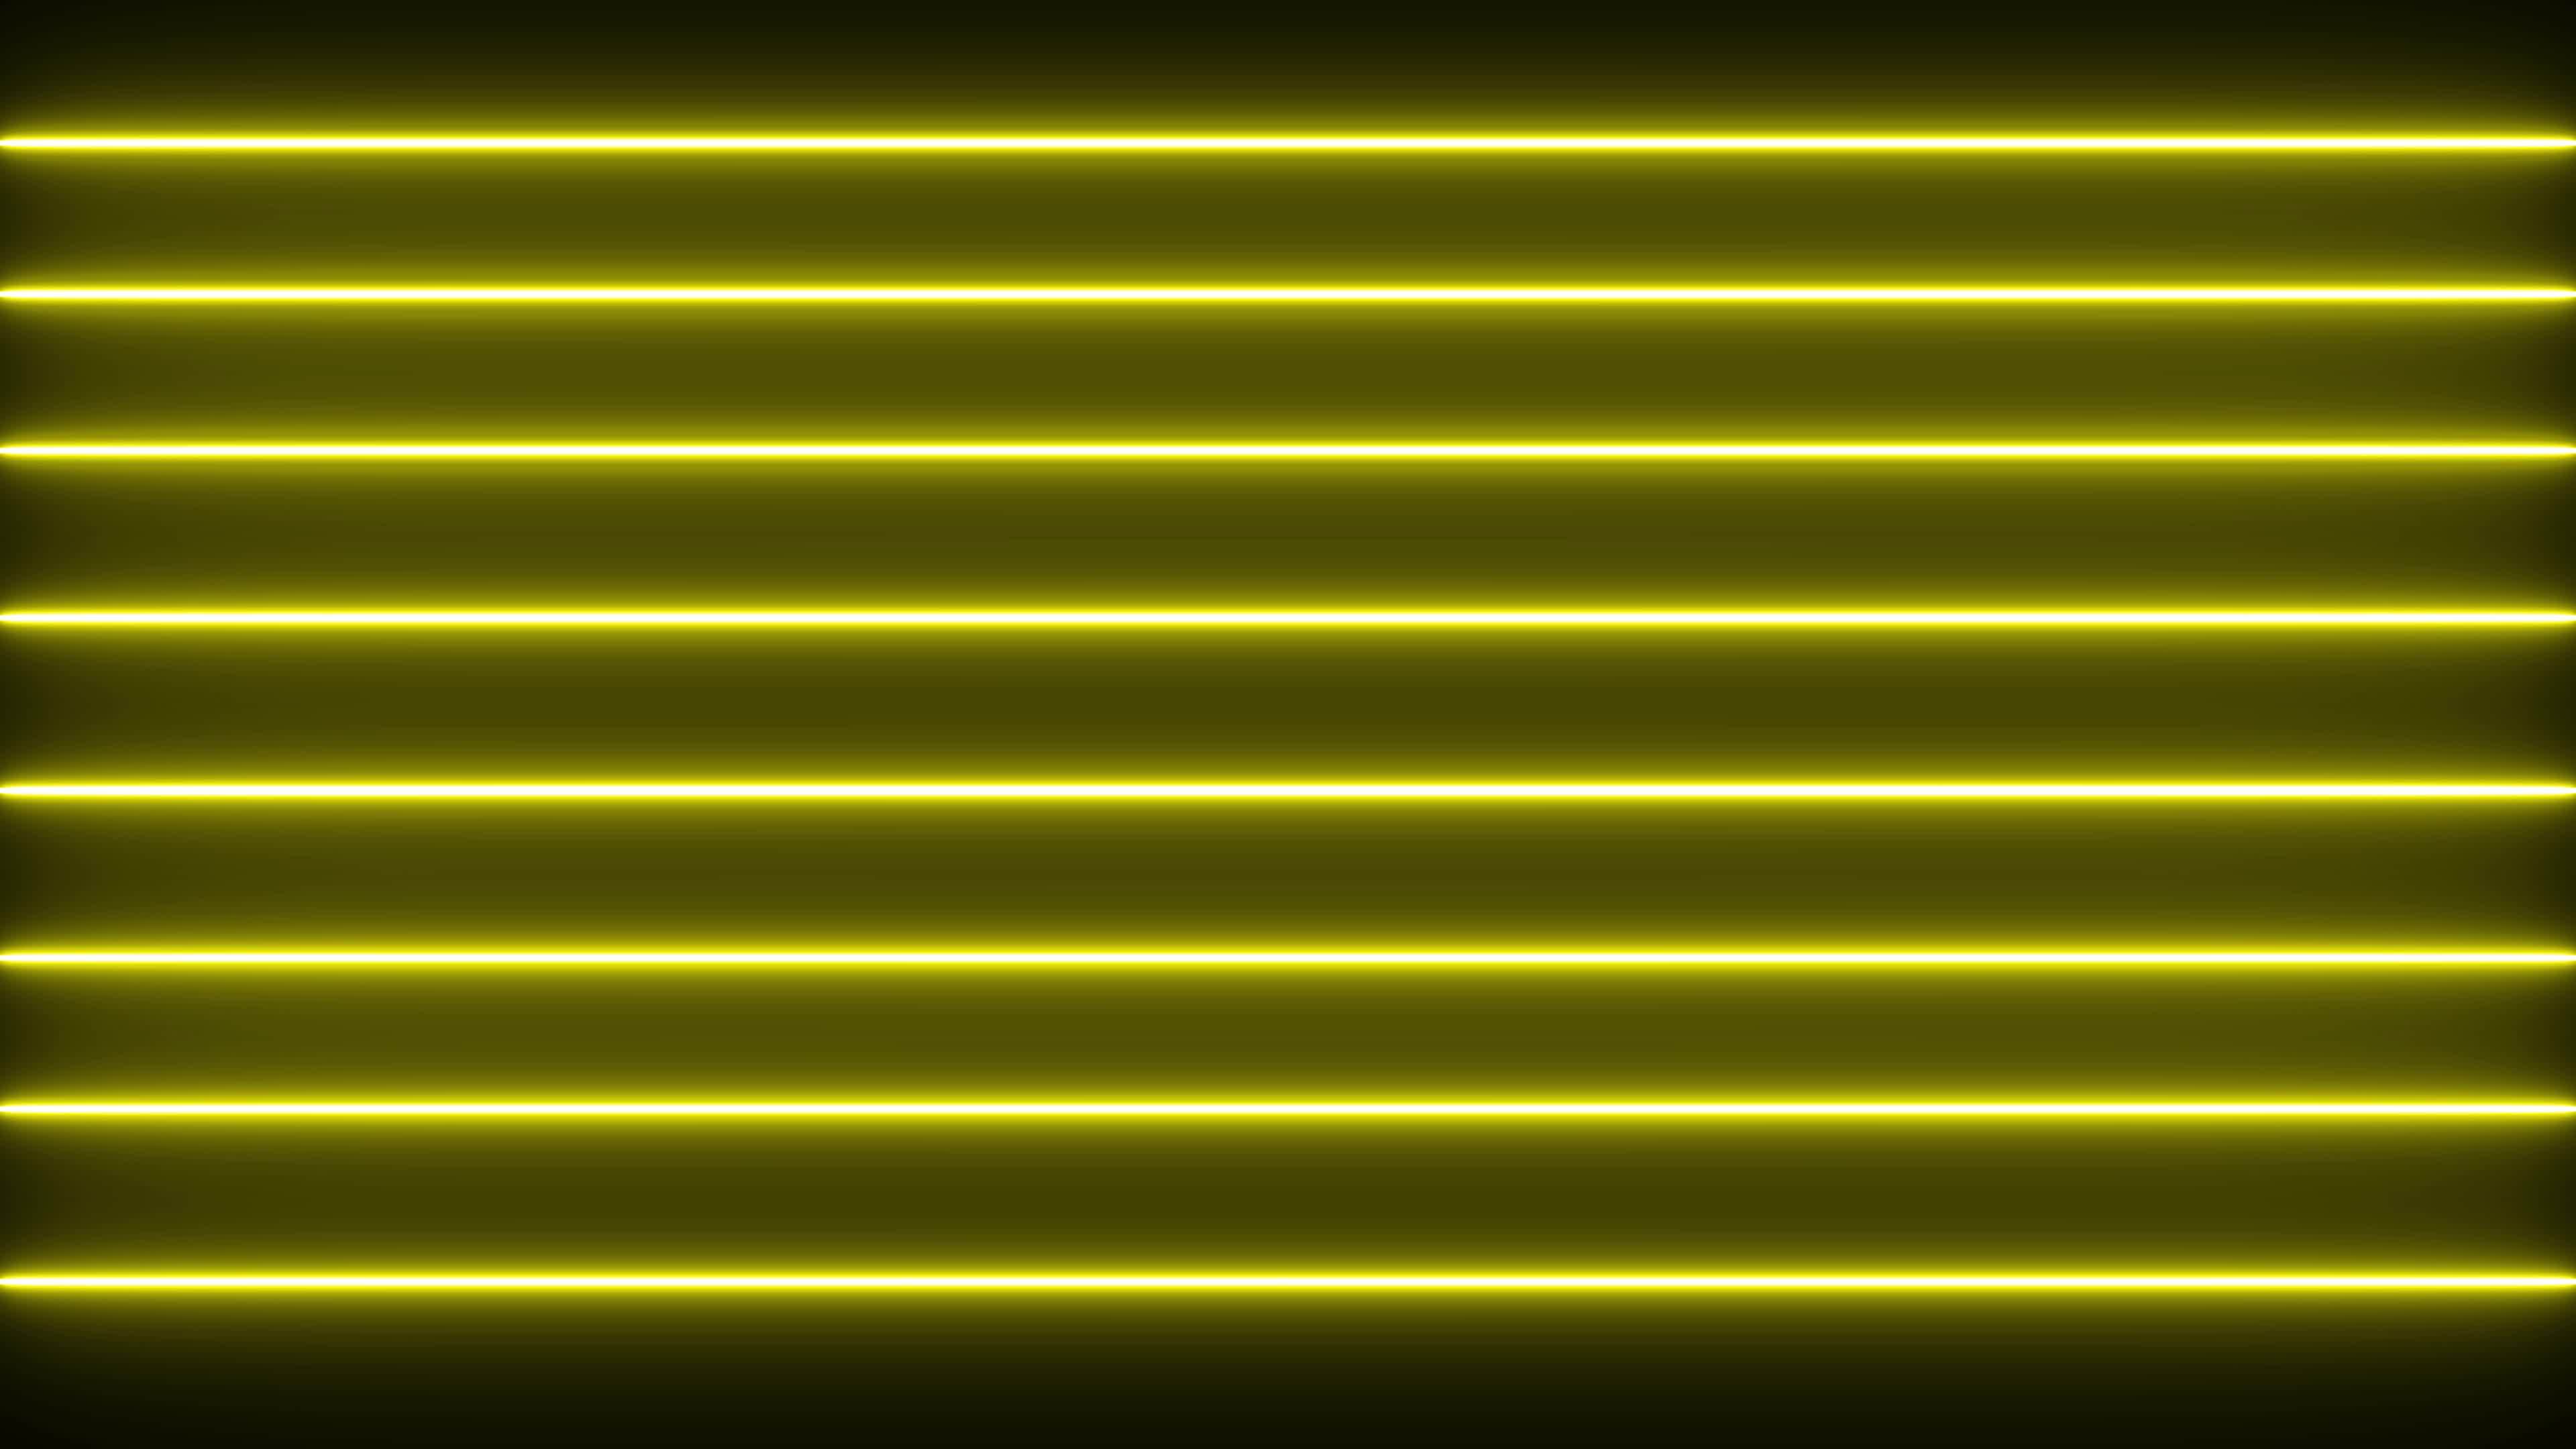 Đèn Neon màu vàng trên nền đen làm nổi bật không gian và tạo cảm giác sang trọng, hiện đại. Hãy xem hình ảnh này để cảm nhận được sức hút của đèn Neon và khám phá những cách sáng tạo để sử dụng chúng.